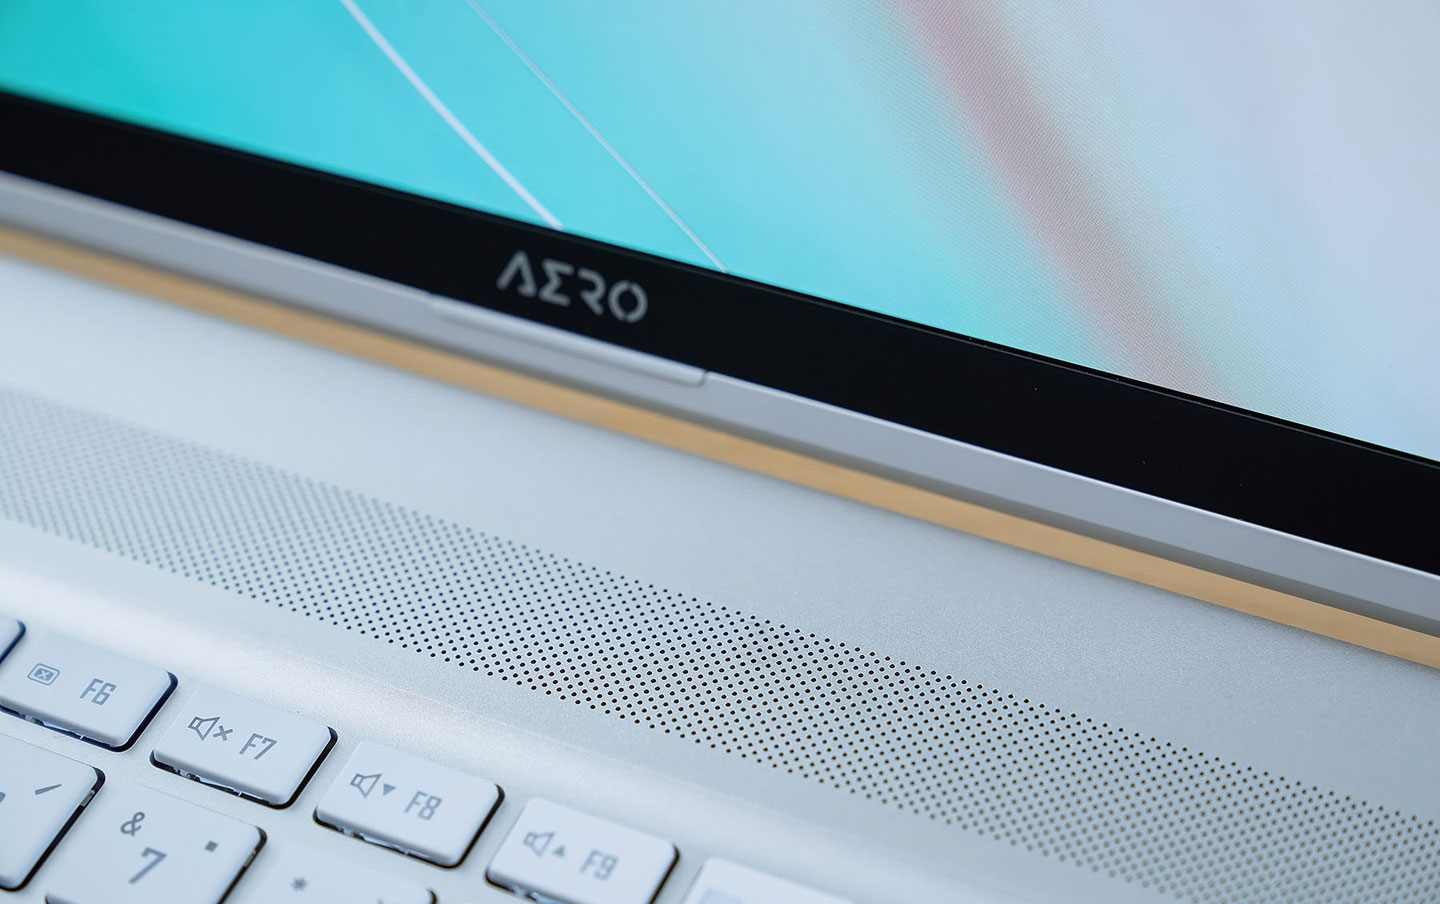 在鍵盤上方靠近螢幕 AERO LOGO 處有一個隱藏於網孔區塊的光源感測器，可以偵測環境亮度自動調校螢幕的顯示設定。